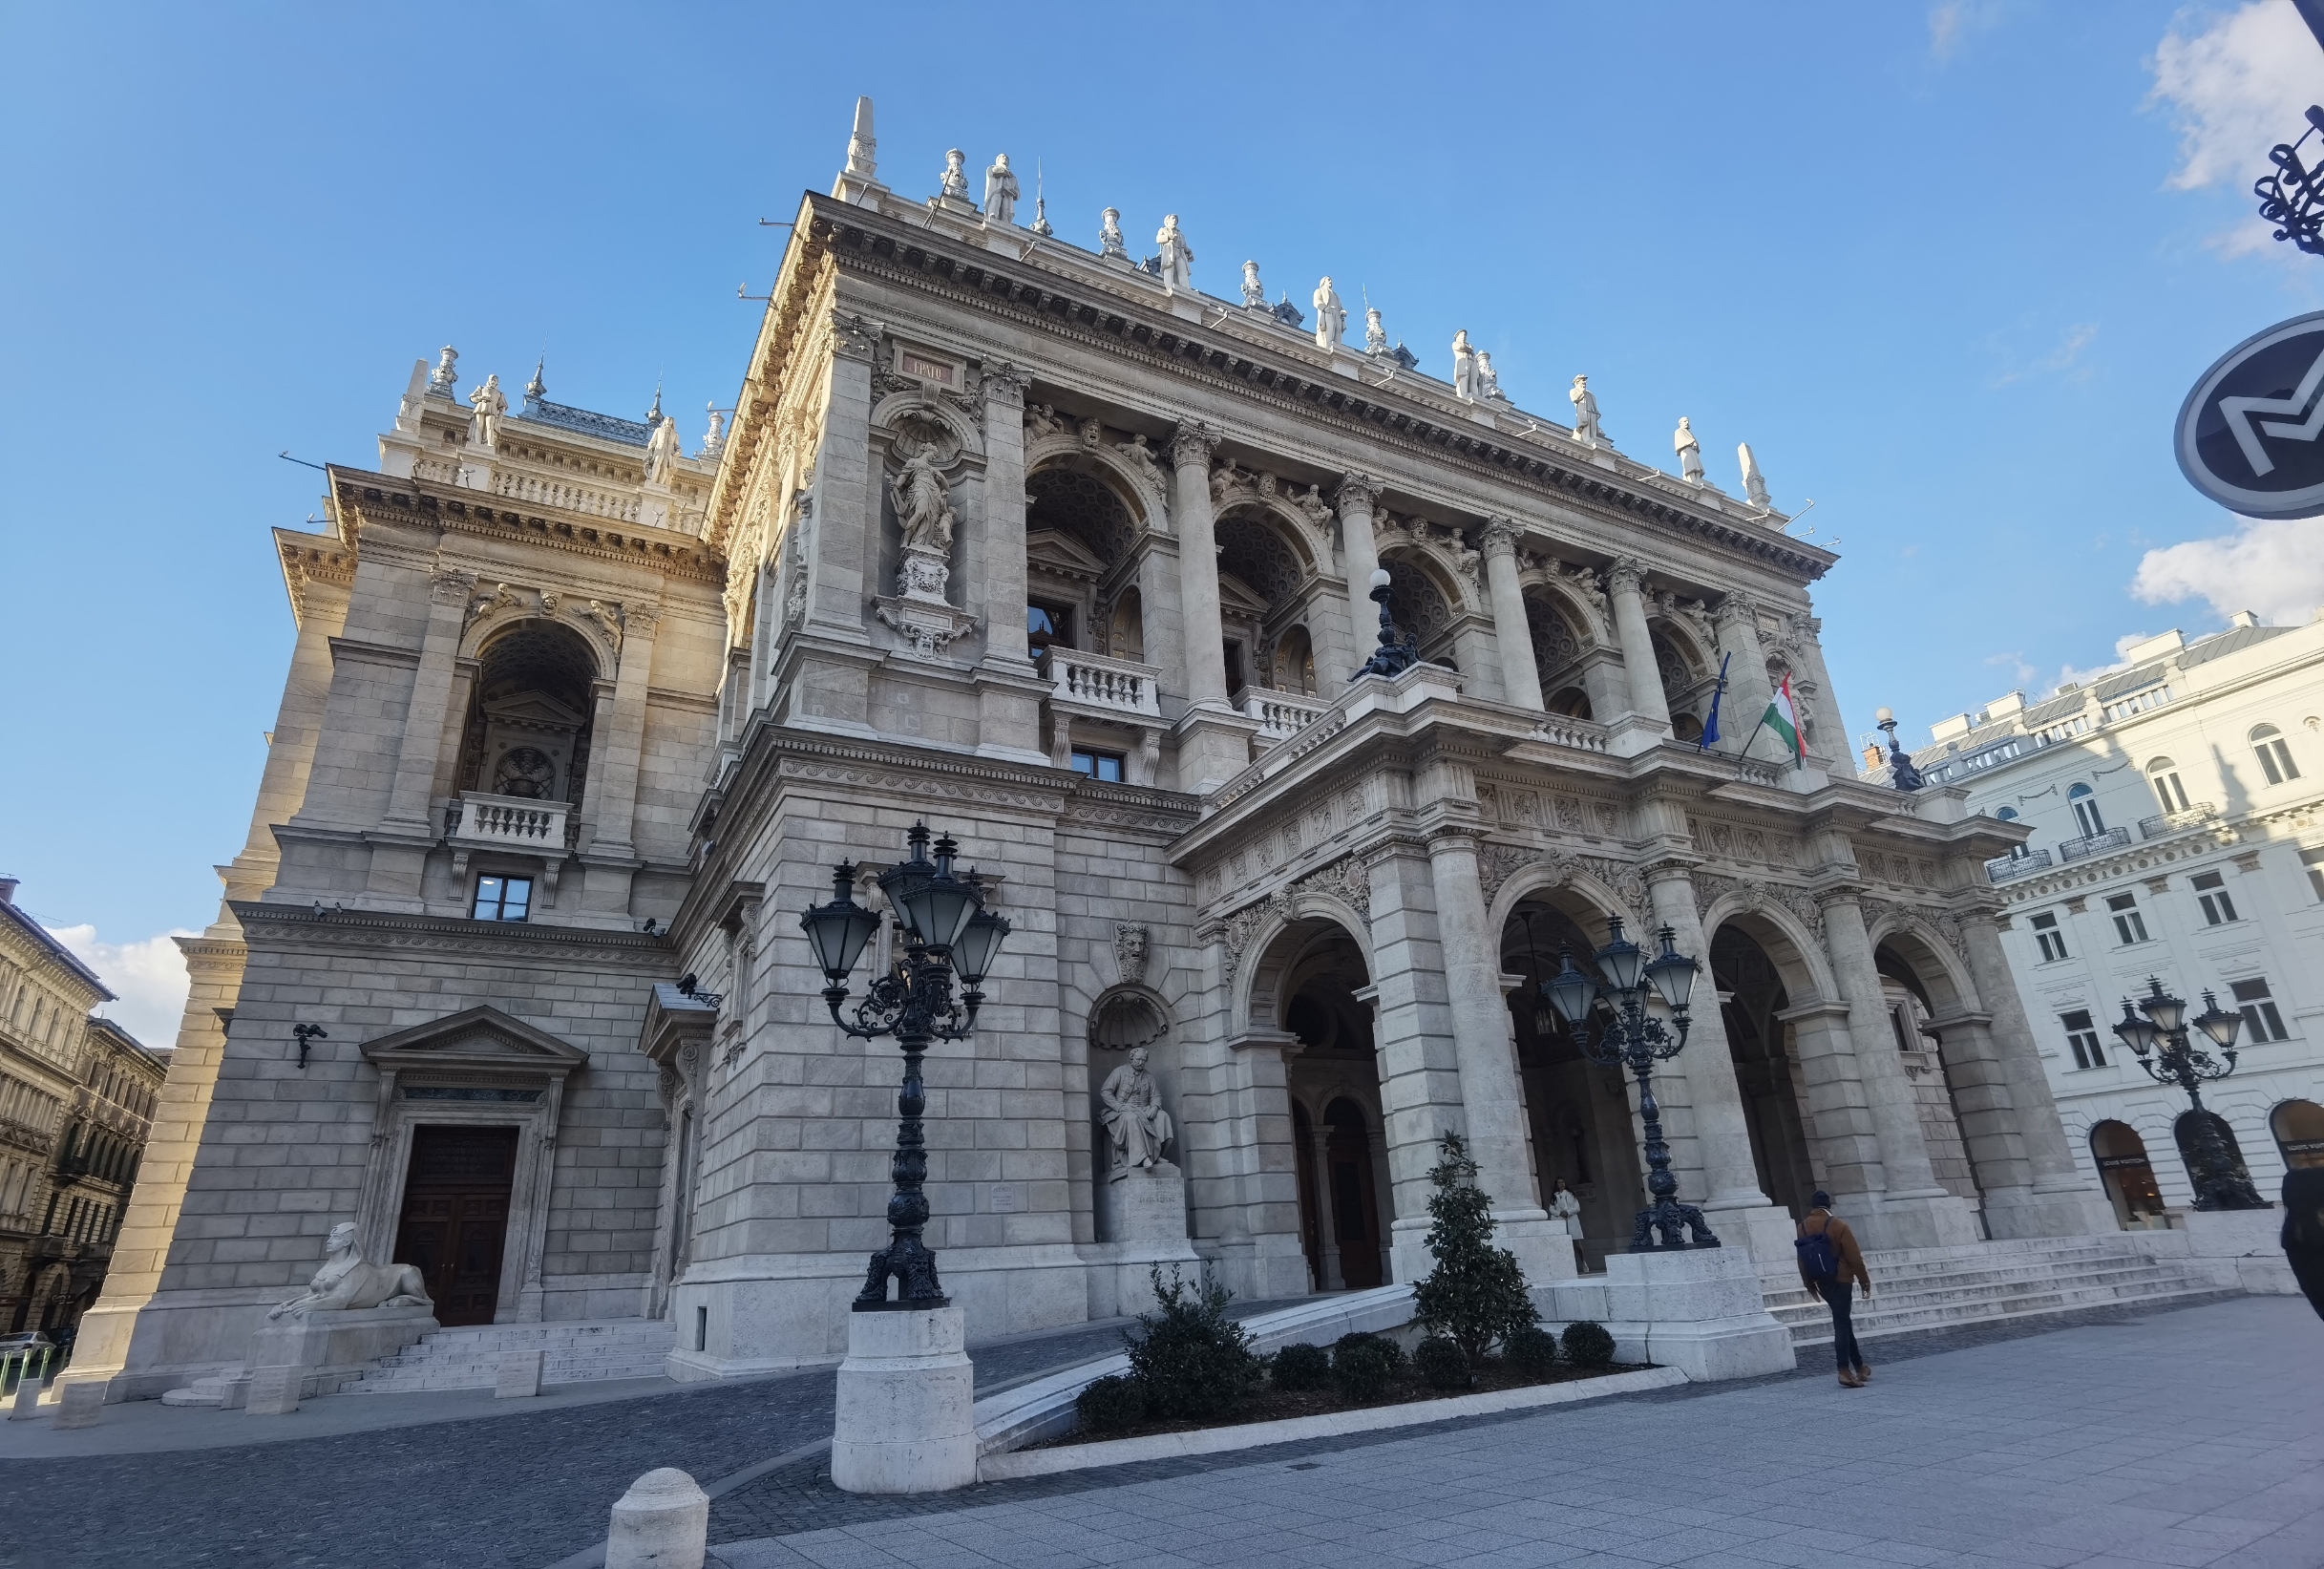 匈牙利歌剧院，灯光暖和，富丽堂皇，很是壮观